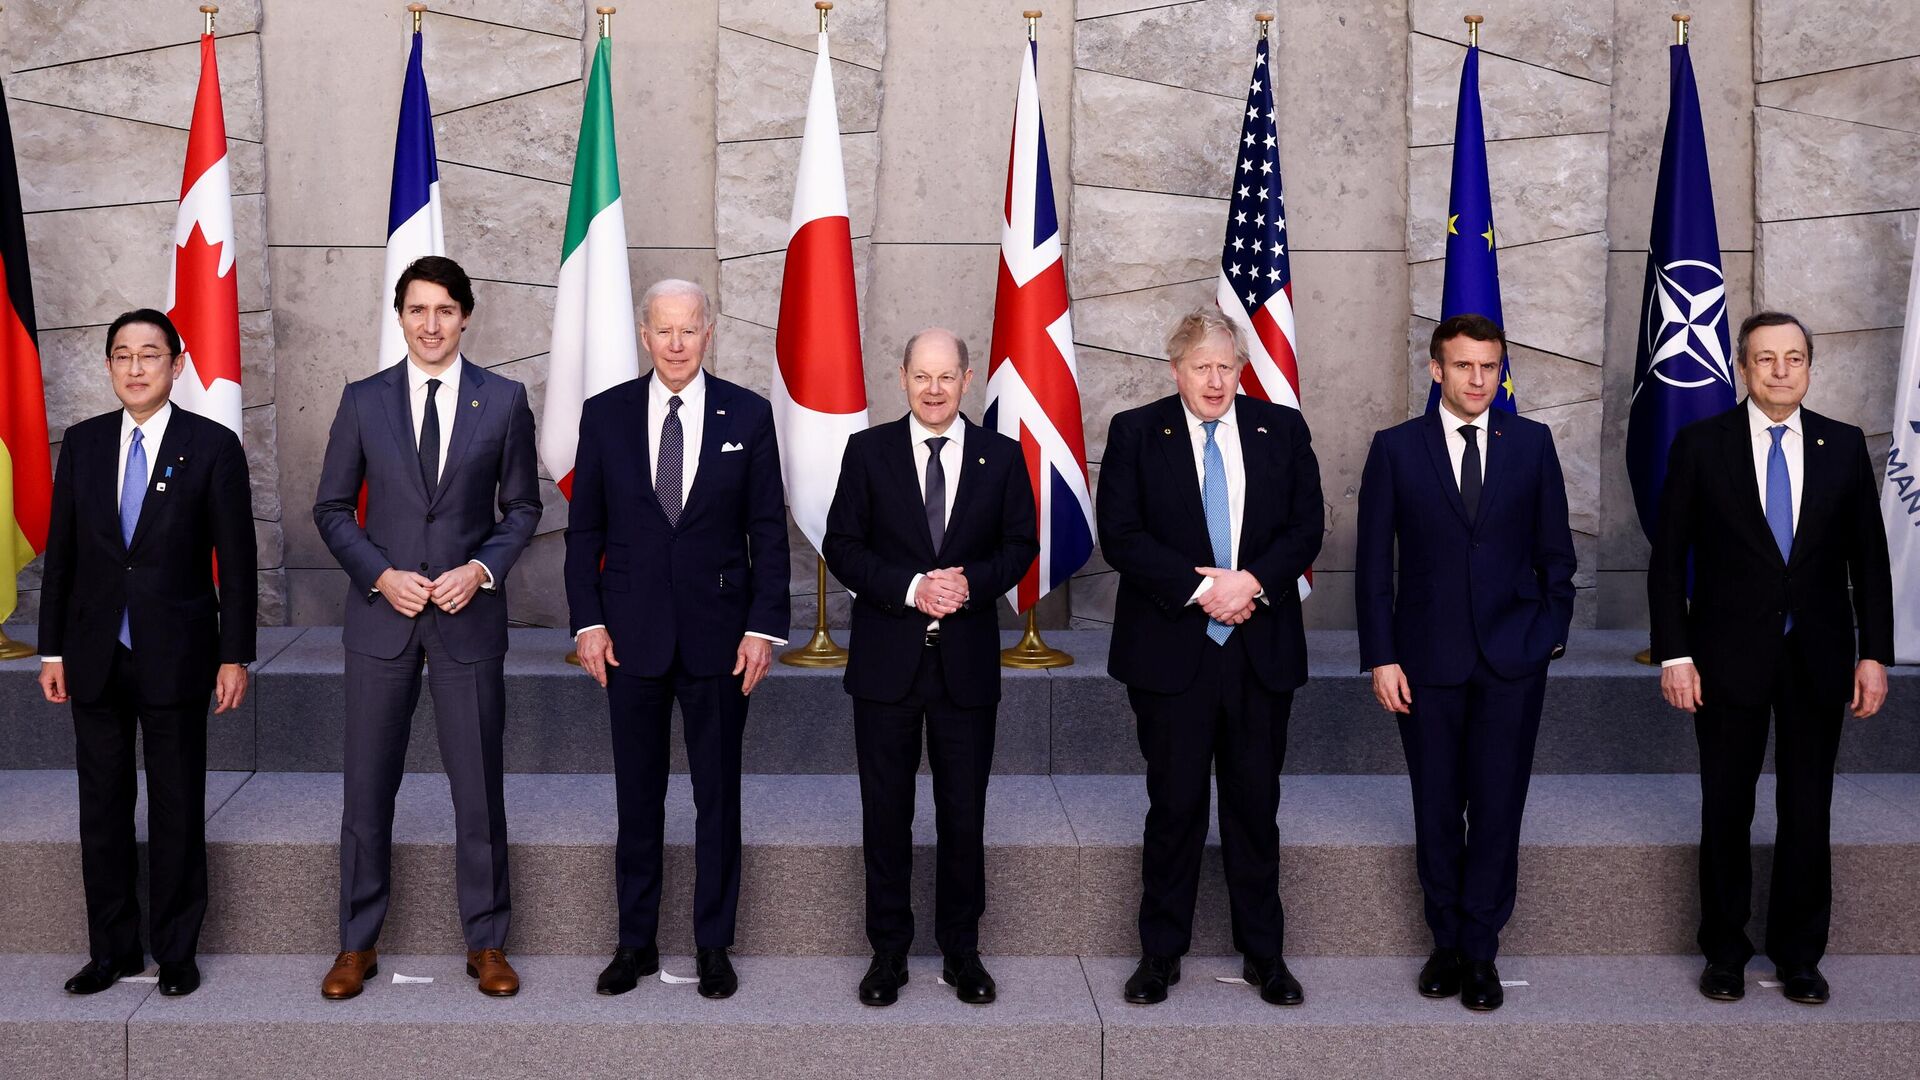 Лидеры G7 во время совместного фотографирования на саммите НАТО в Брюсселе. 24 марта 2022 - РИА Новости, 1920, 24.03.2022